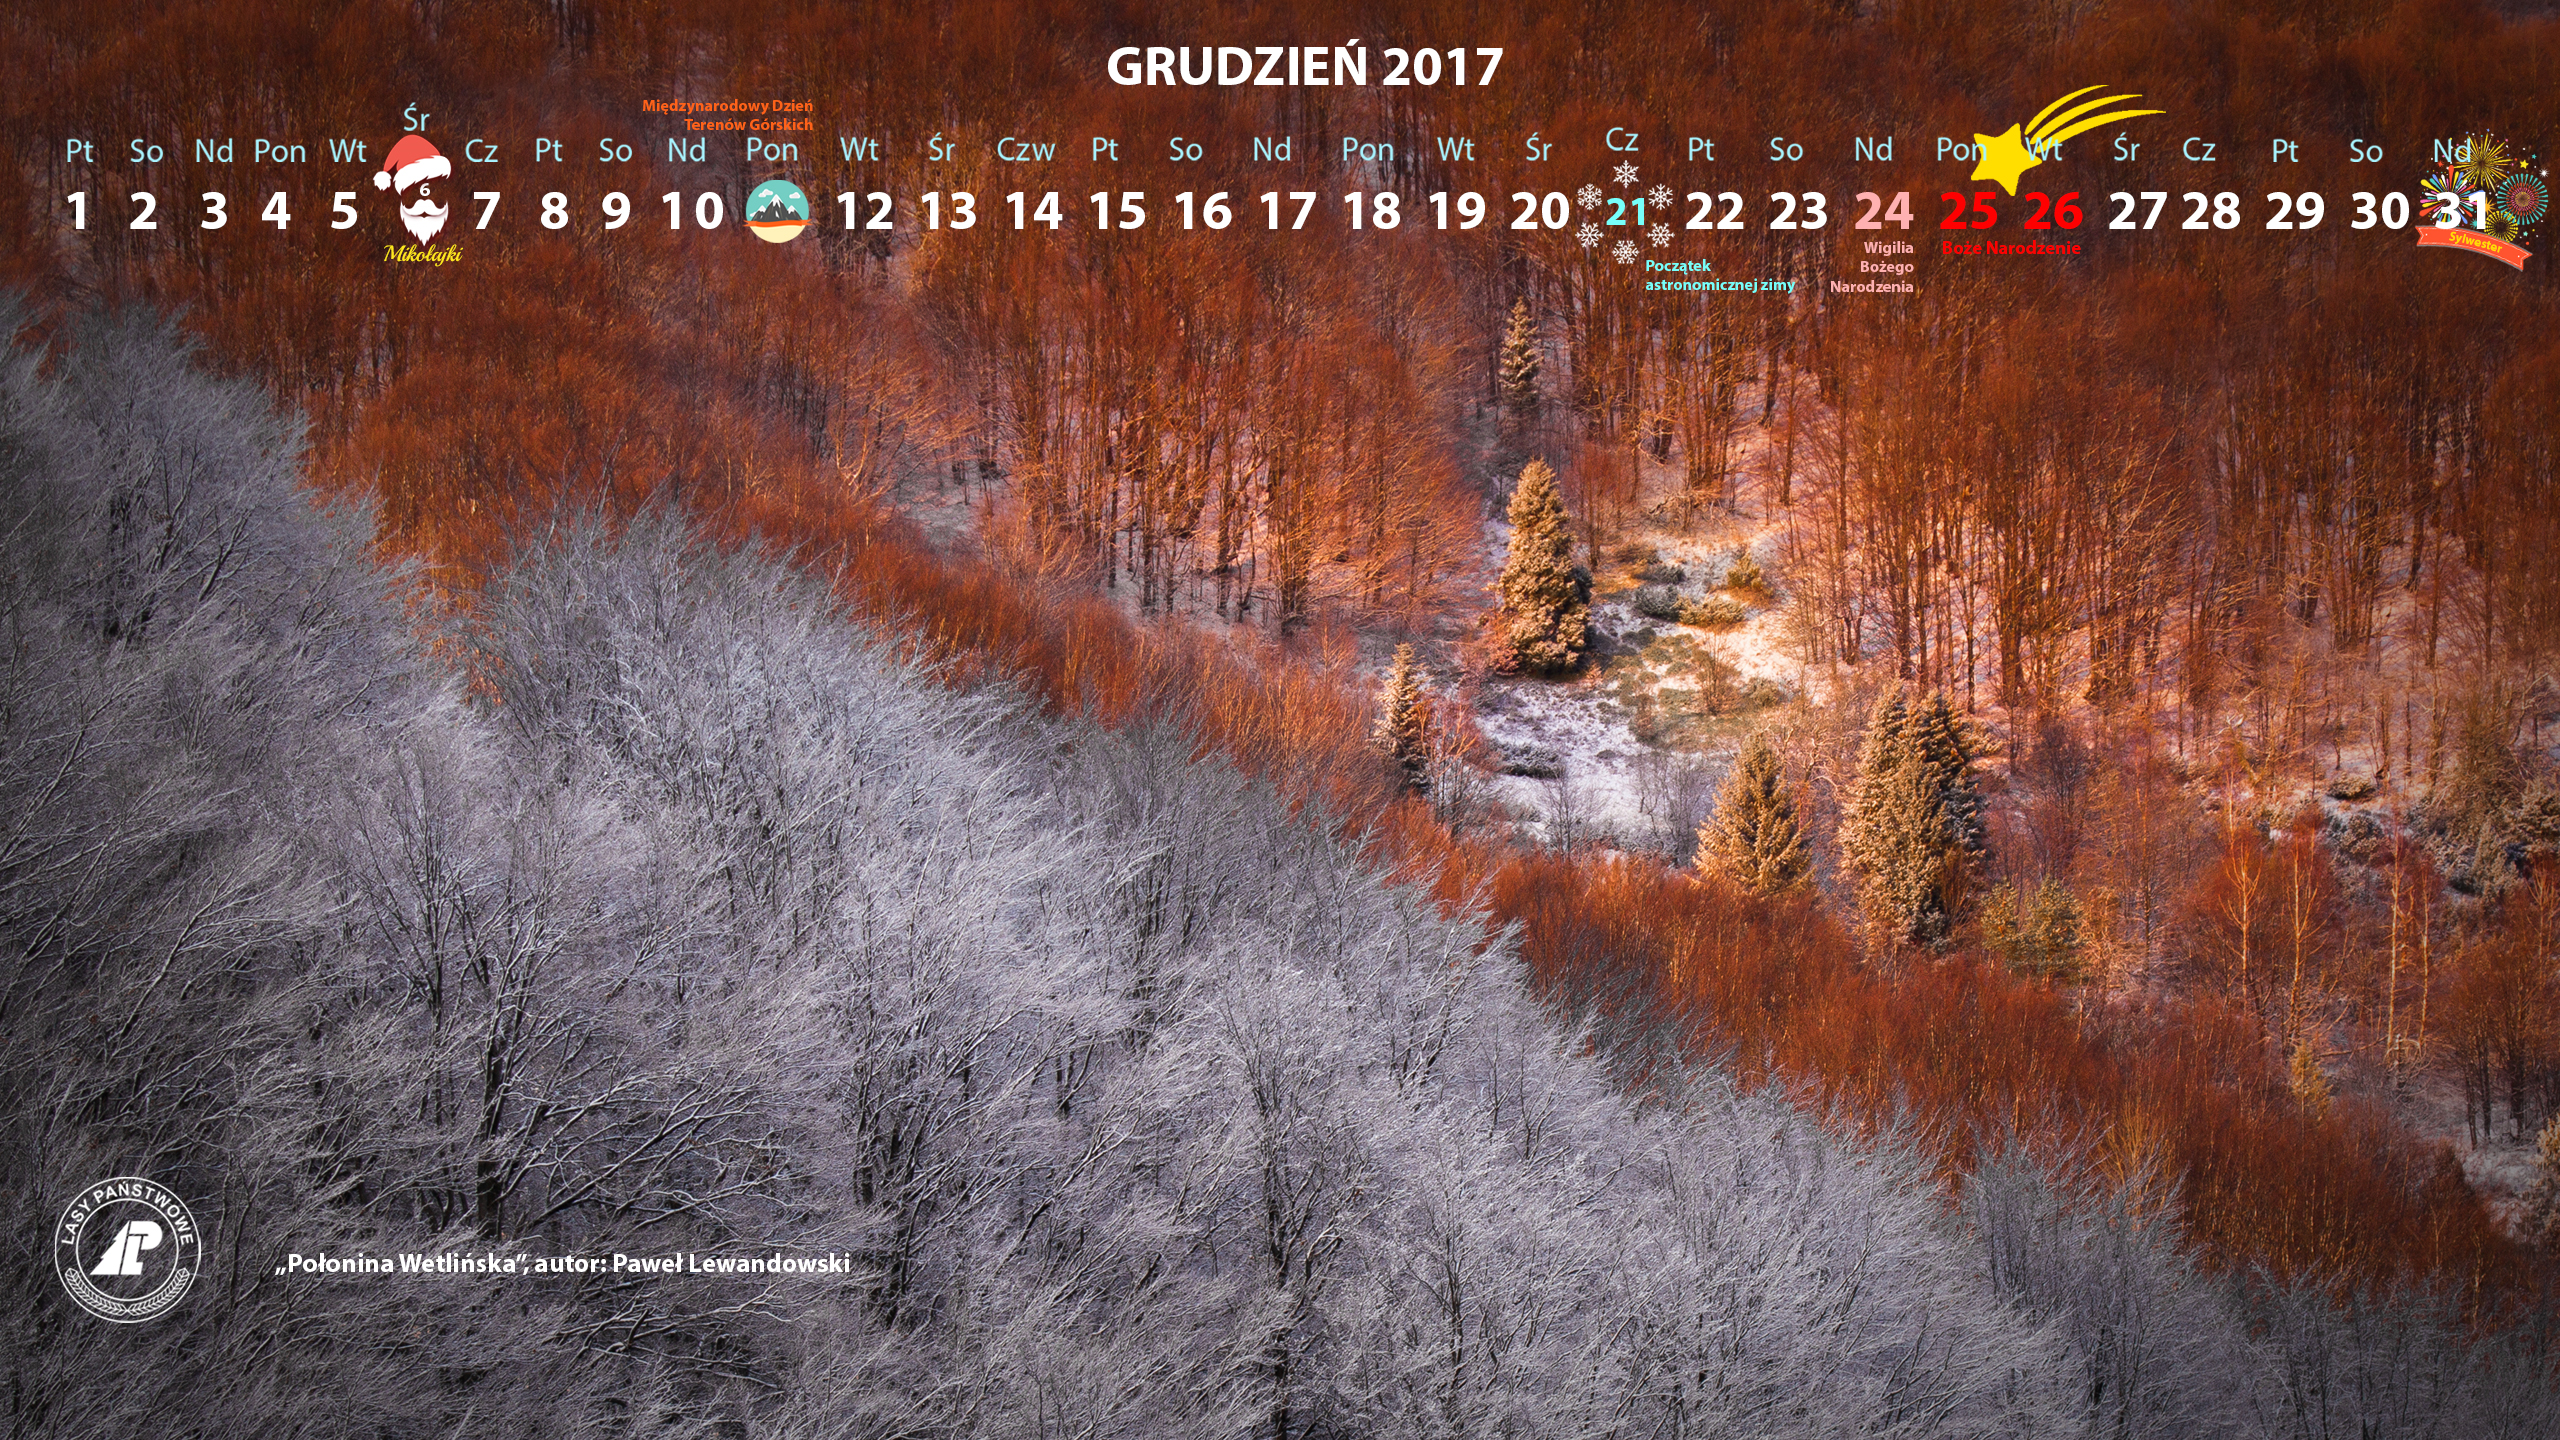 Kalendarz grudzien 2017 2560x1440.jpg